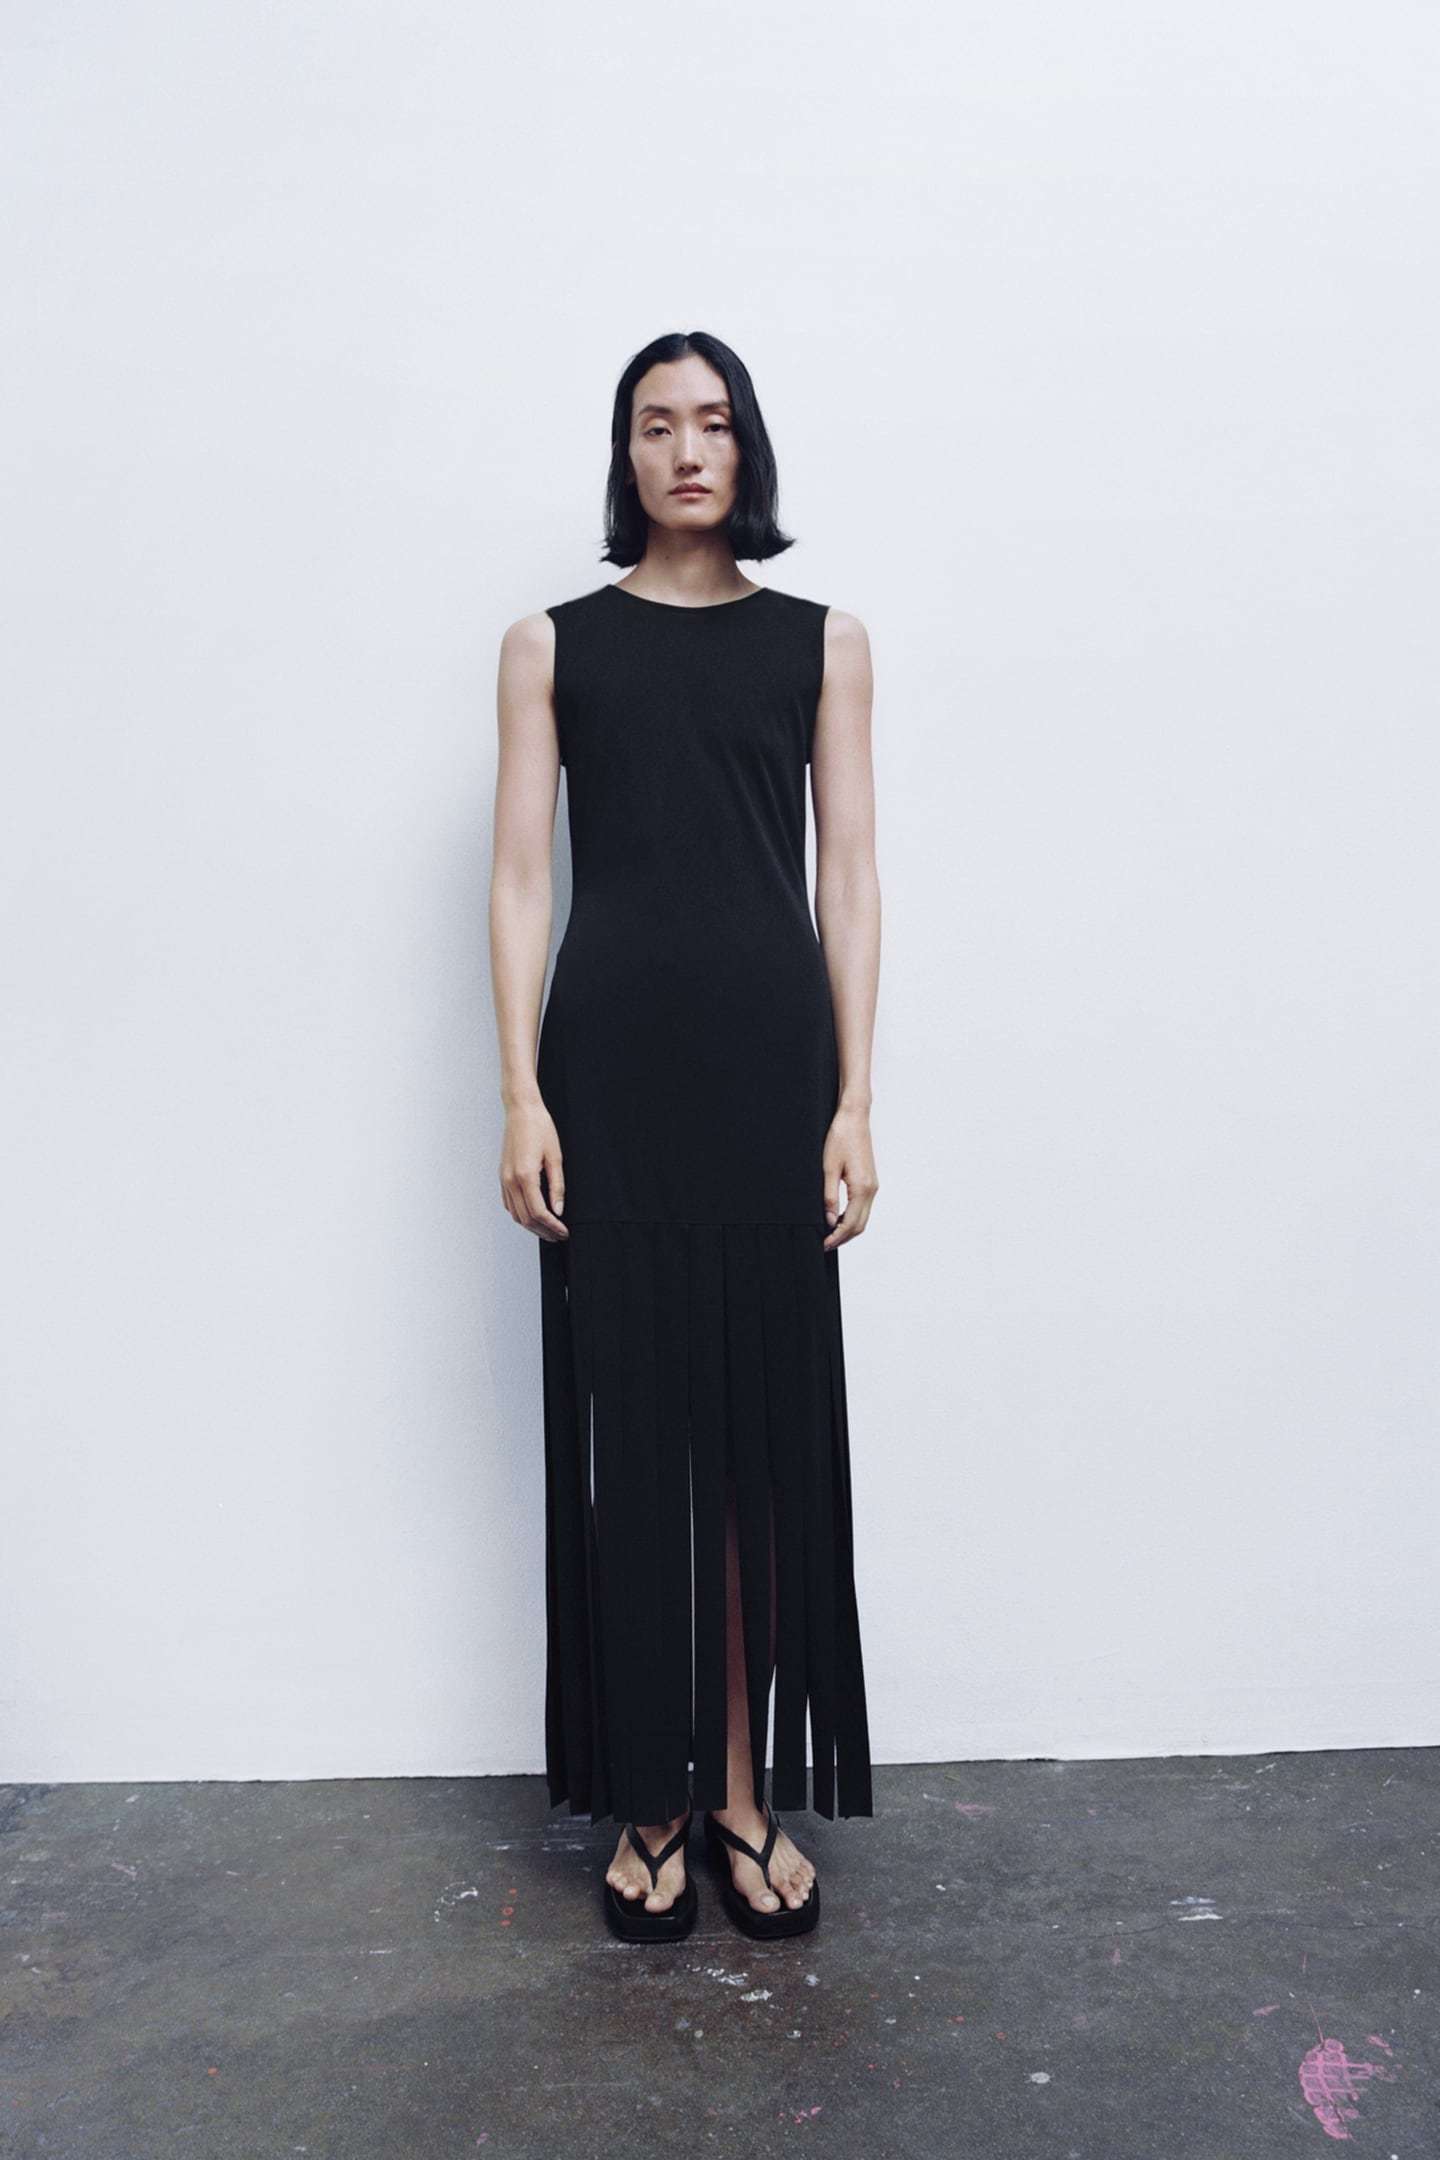 ALT: Este es el vestido de flecos de Zara que est arrasando, la tendencia indiscutible de 2023